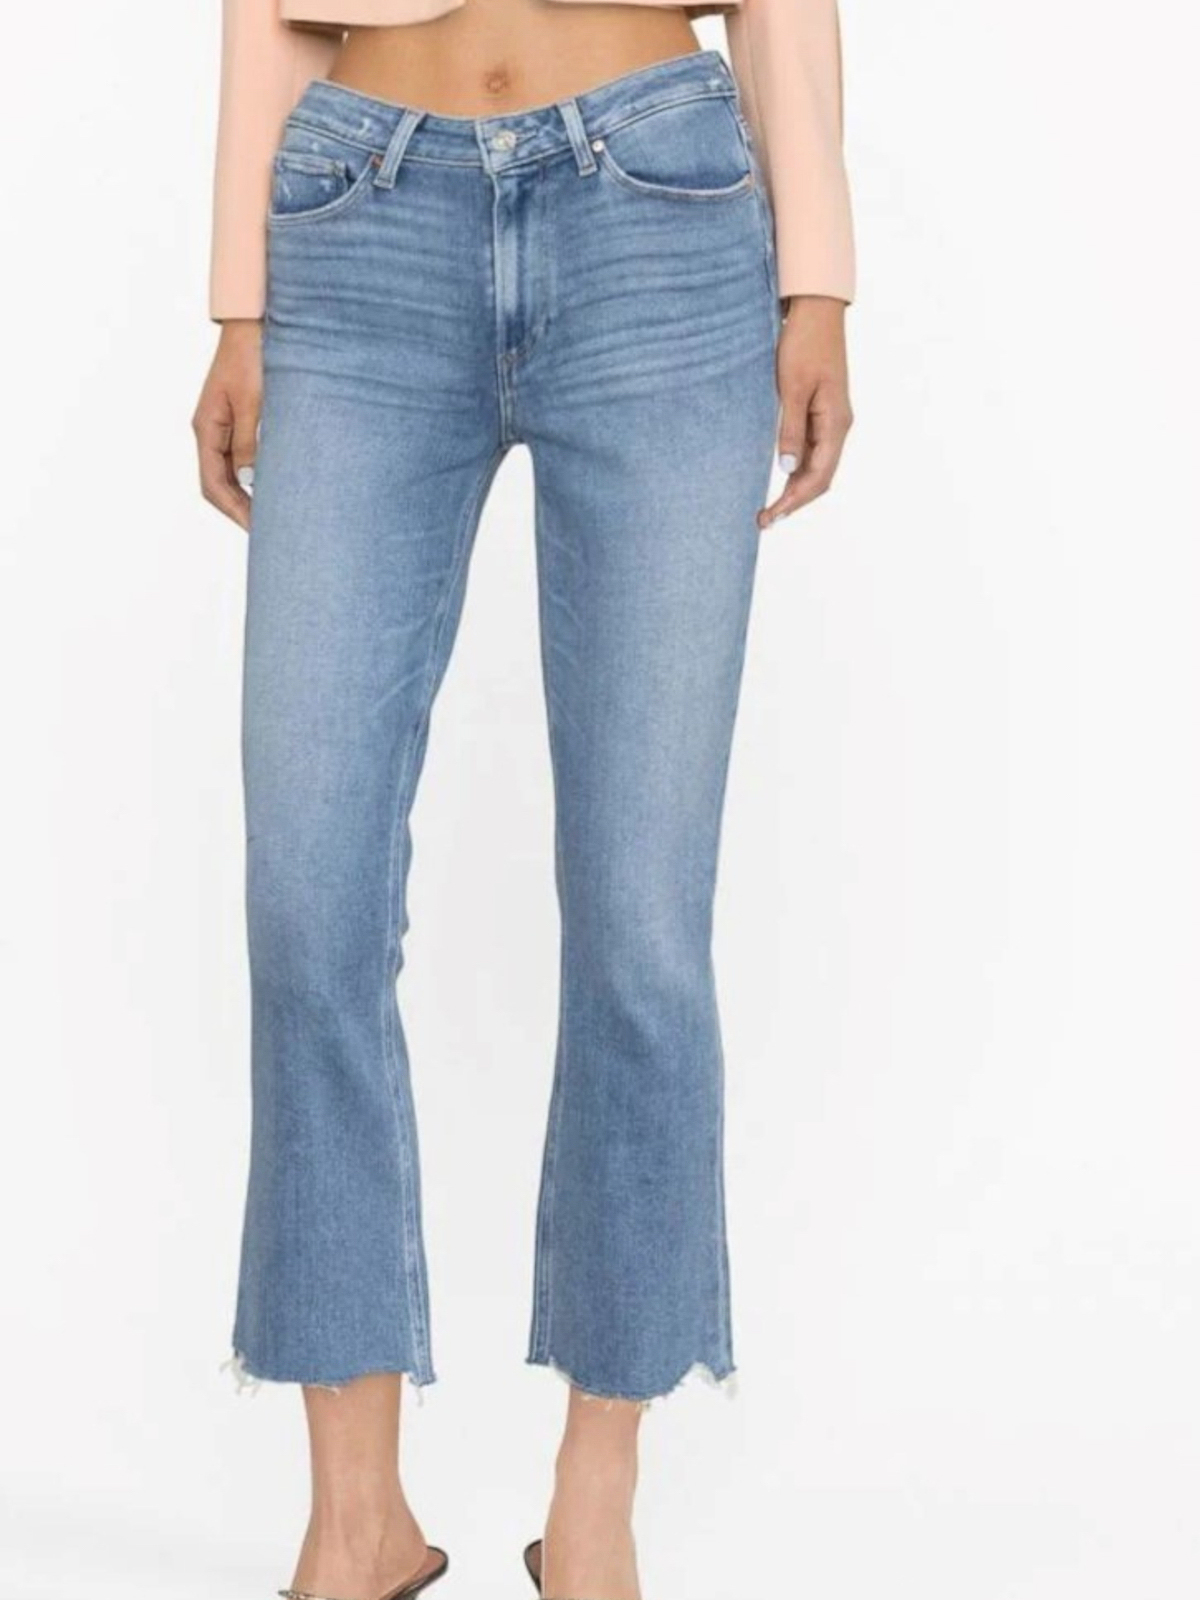 Shop Paige Jeans Acampanados - Lavado Claro